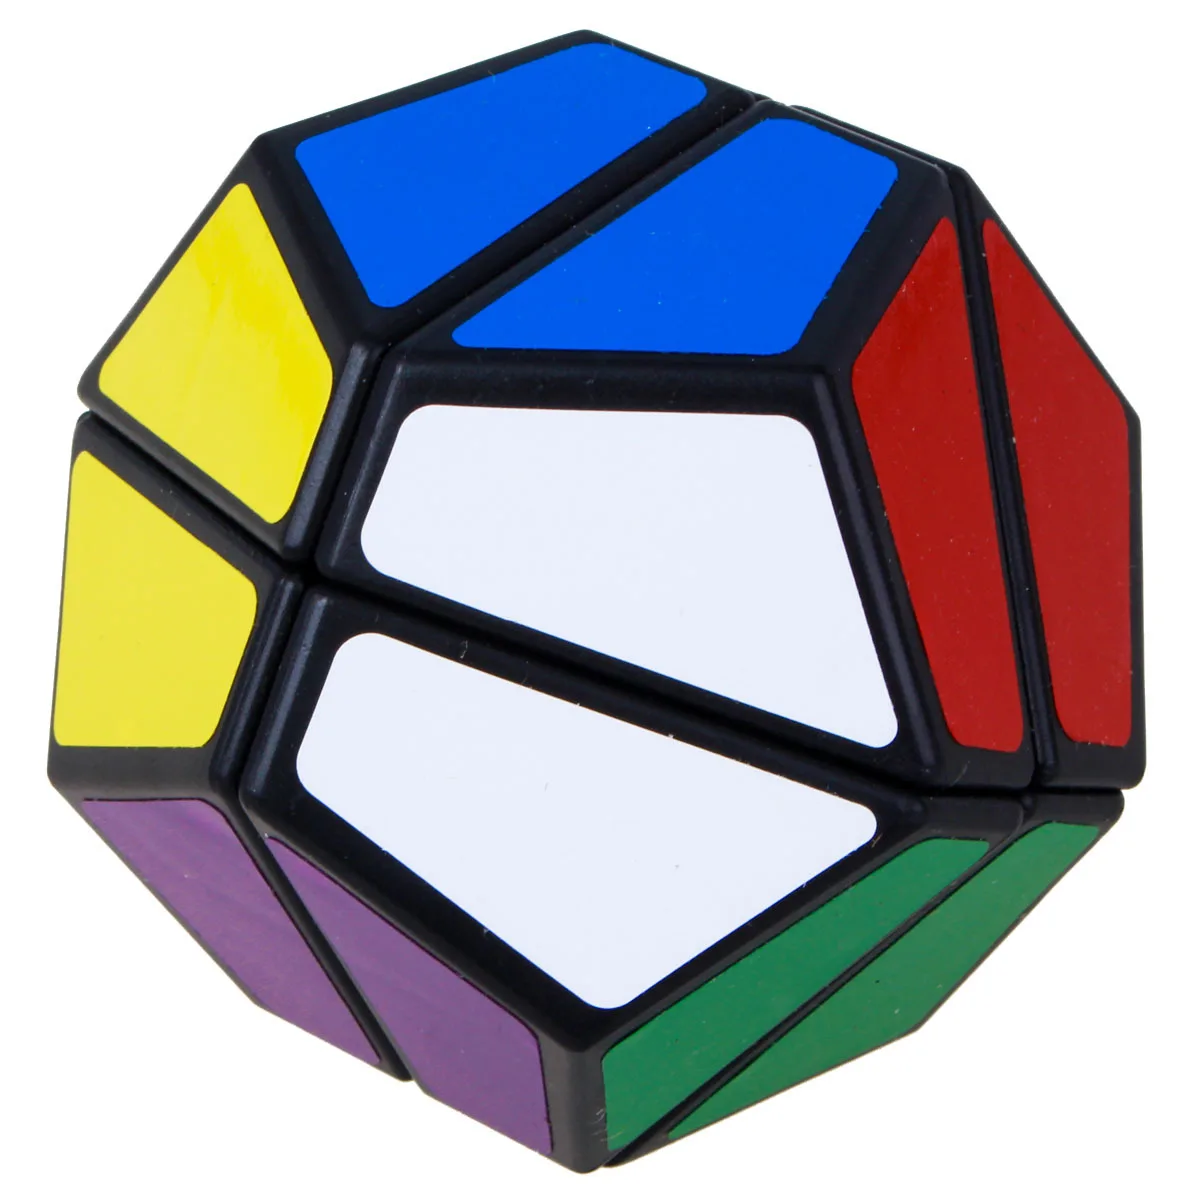 [Синий второй заказ, 12 поверхности тела, Кубик Рубика] синий 2-заказ, 12 поверхности тела, аномальный кубик, обучающая игрушка